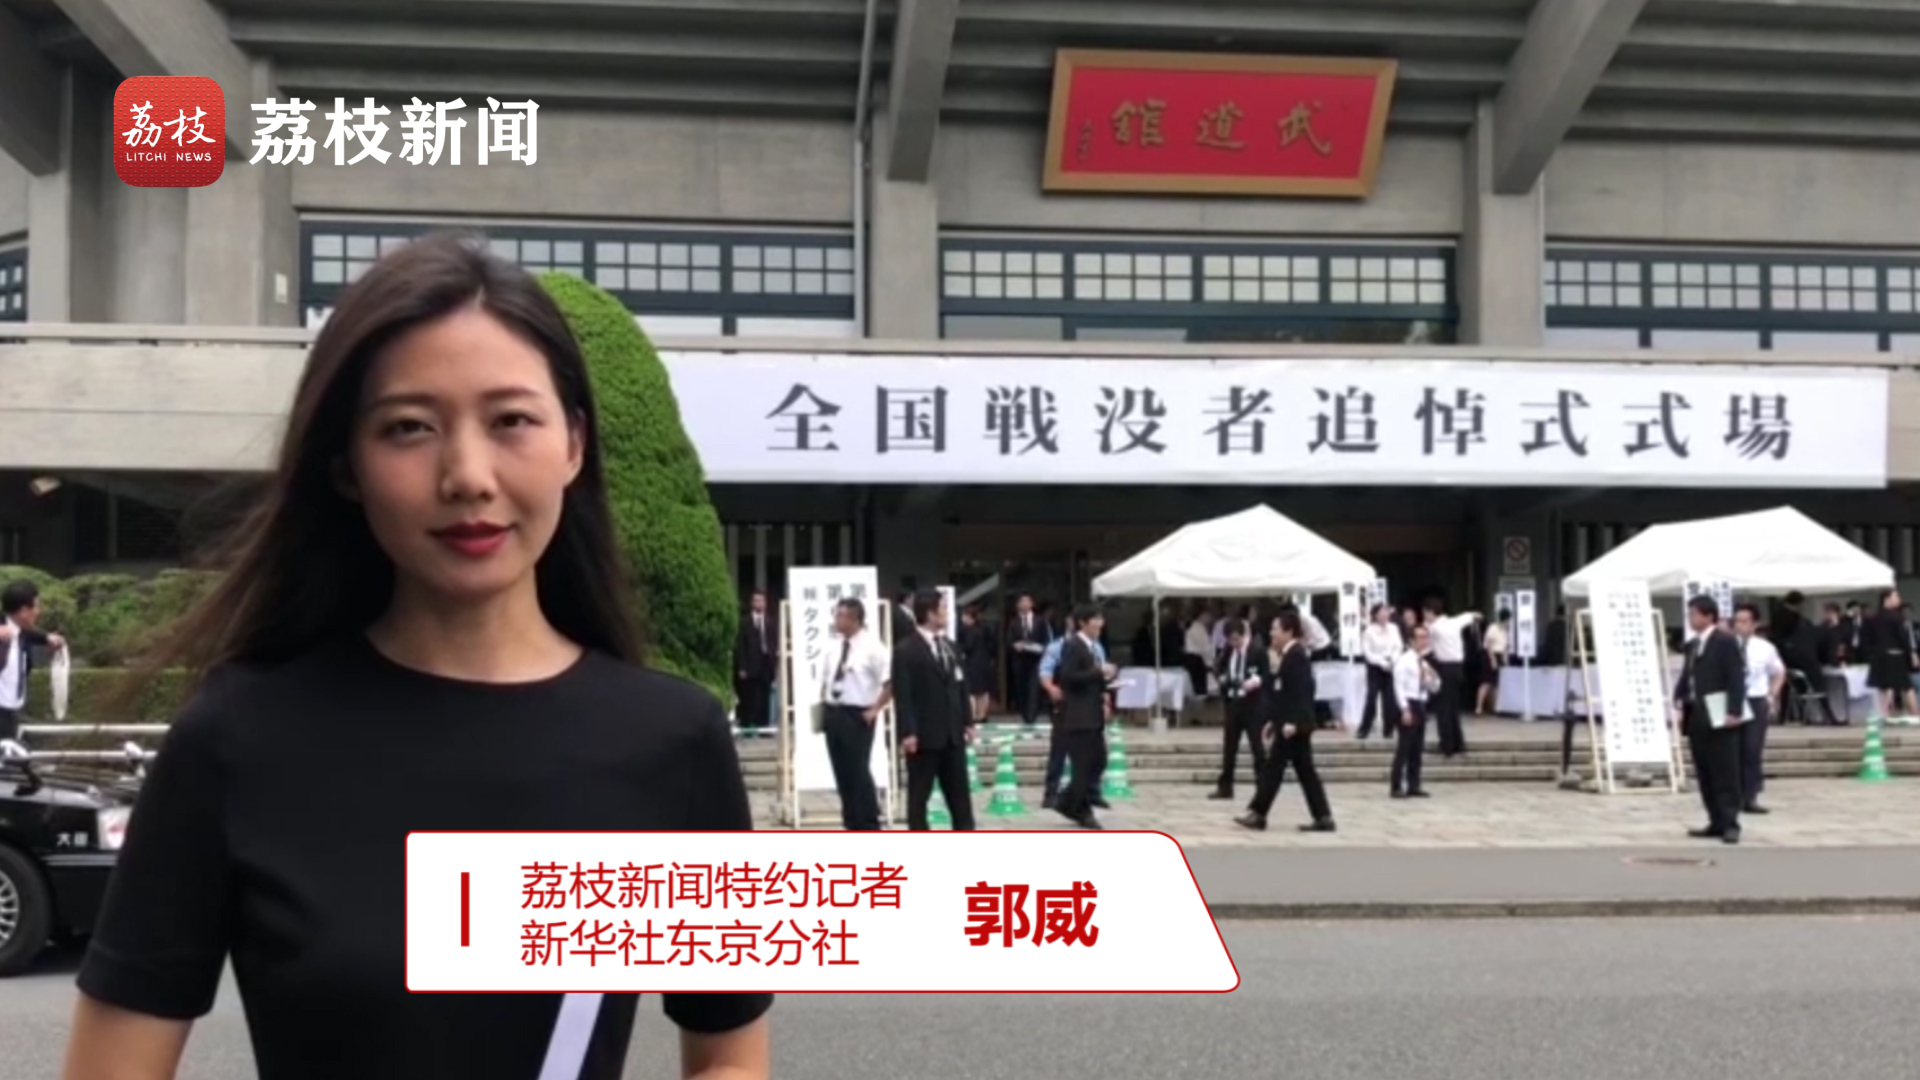 日本“全国战殁者追悼仪式”在日本武道馆召开